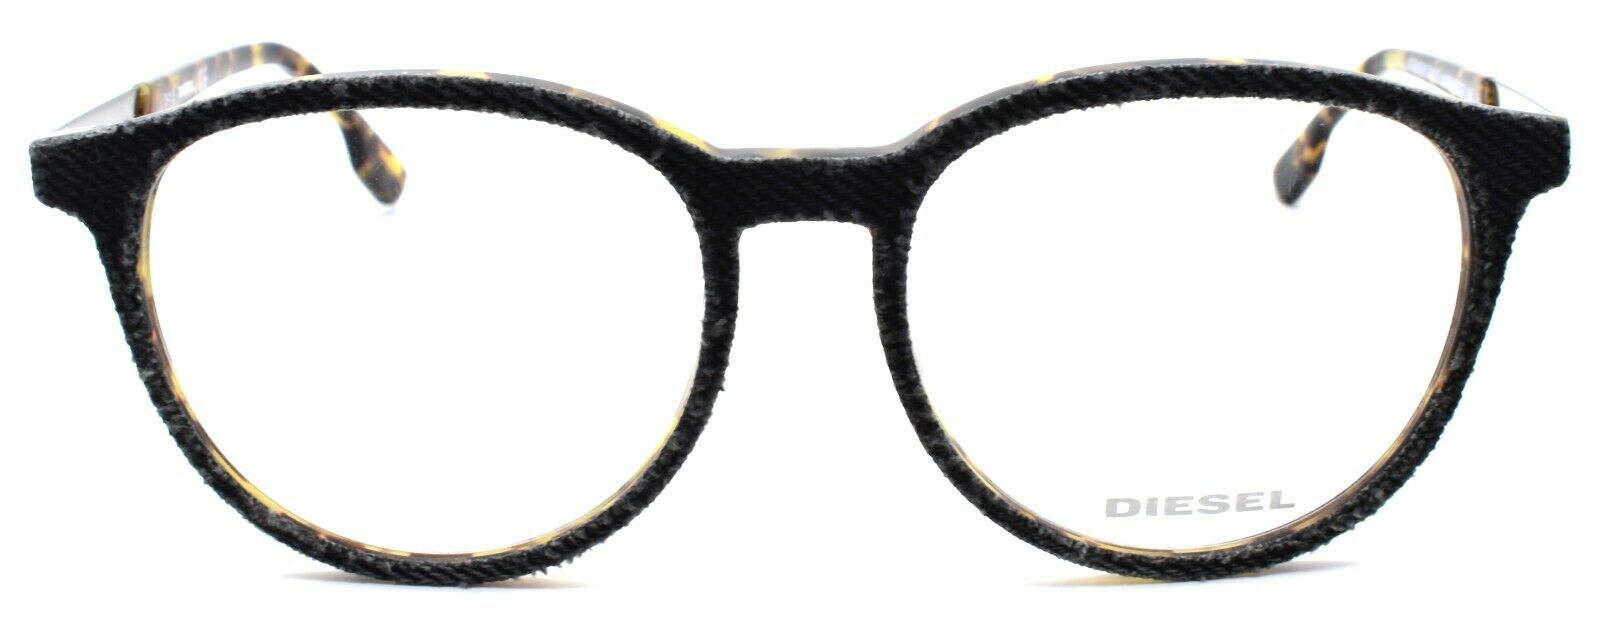 2-Diesel DL5117 005 Unisex Eyeglasses Frames 52-17-145 Black Denim / Blonde Havana-664689647026-IKSpecs